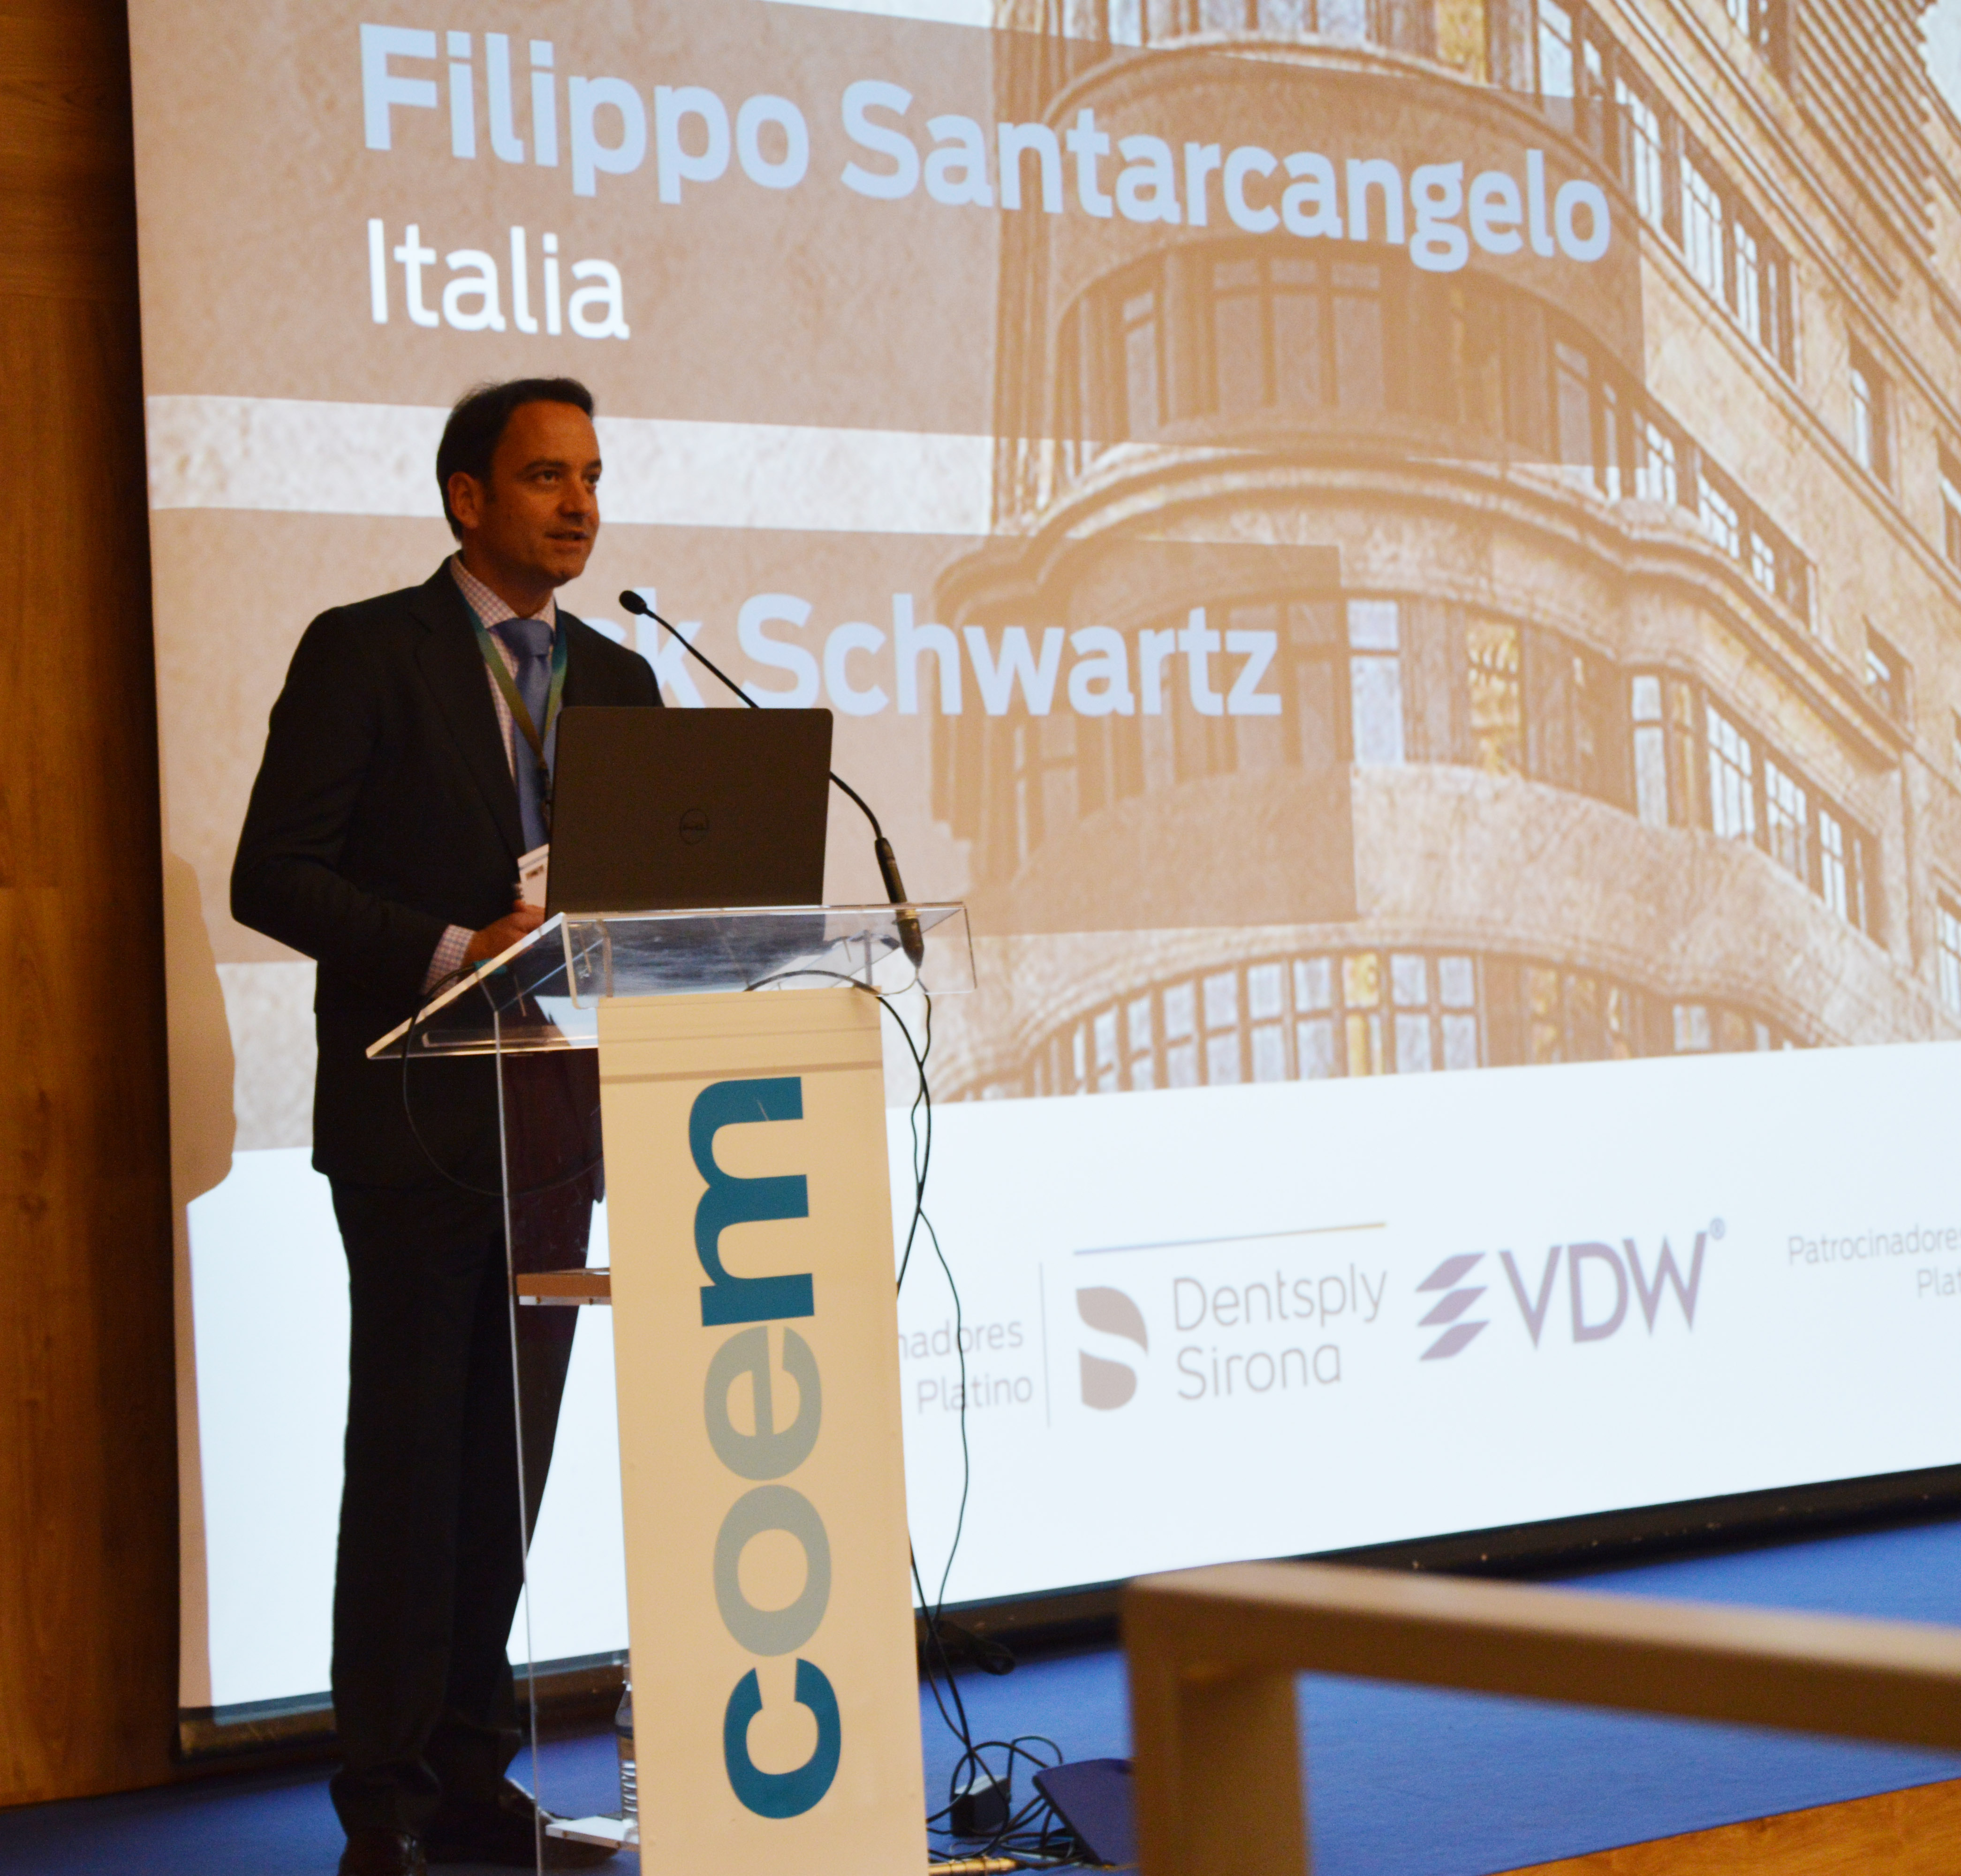 En la imagen, el presidente de Aede, Miguel Miñana, durante una intervención en un congreso de endodoncia. FOTO: Aede